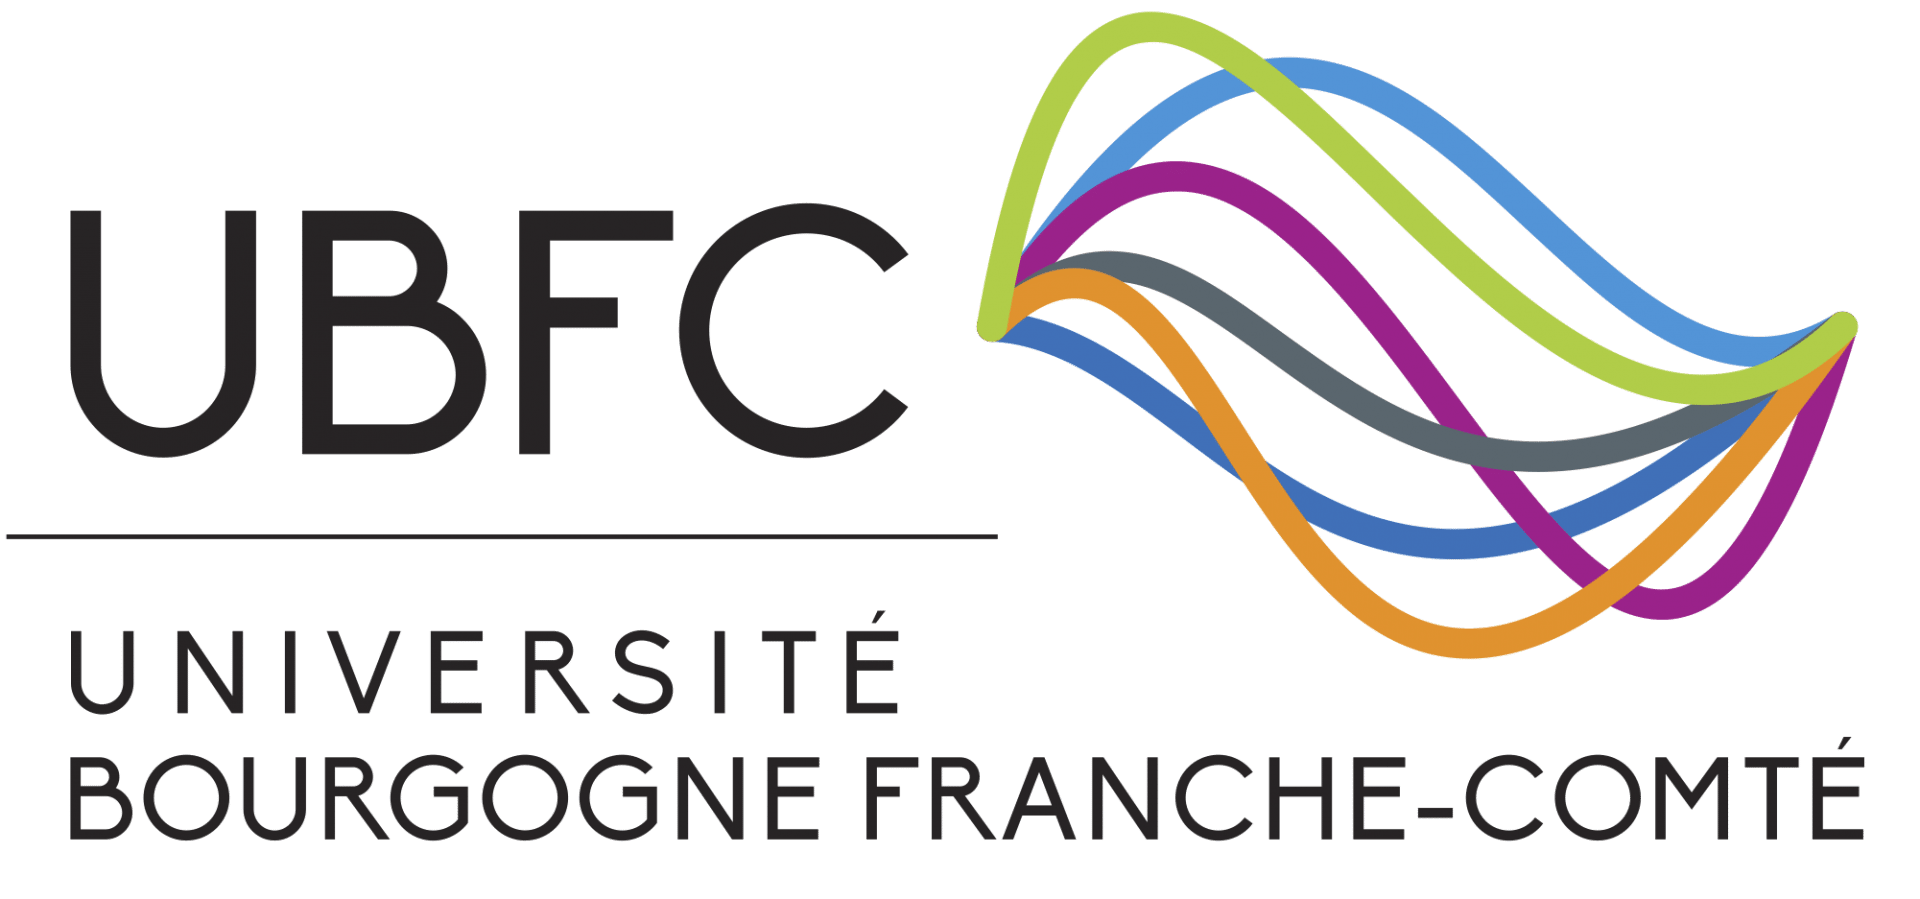 logo UBFC